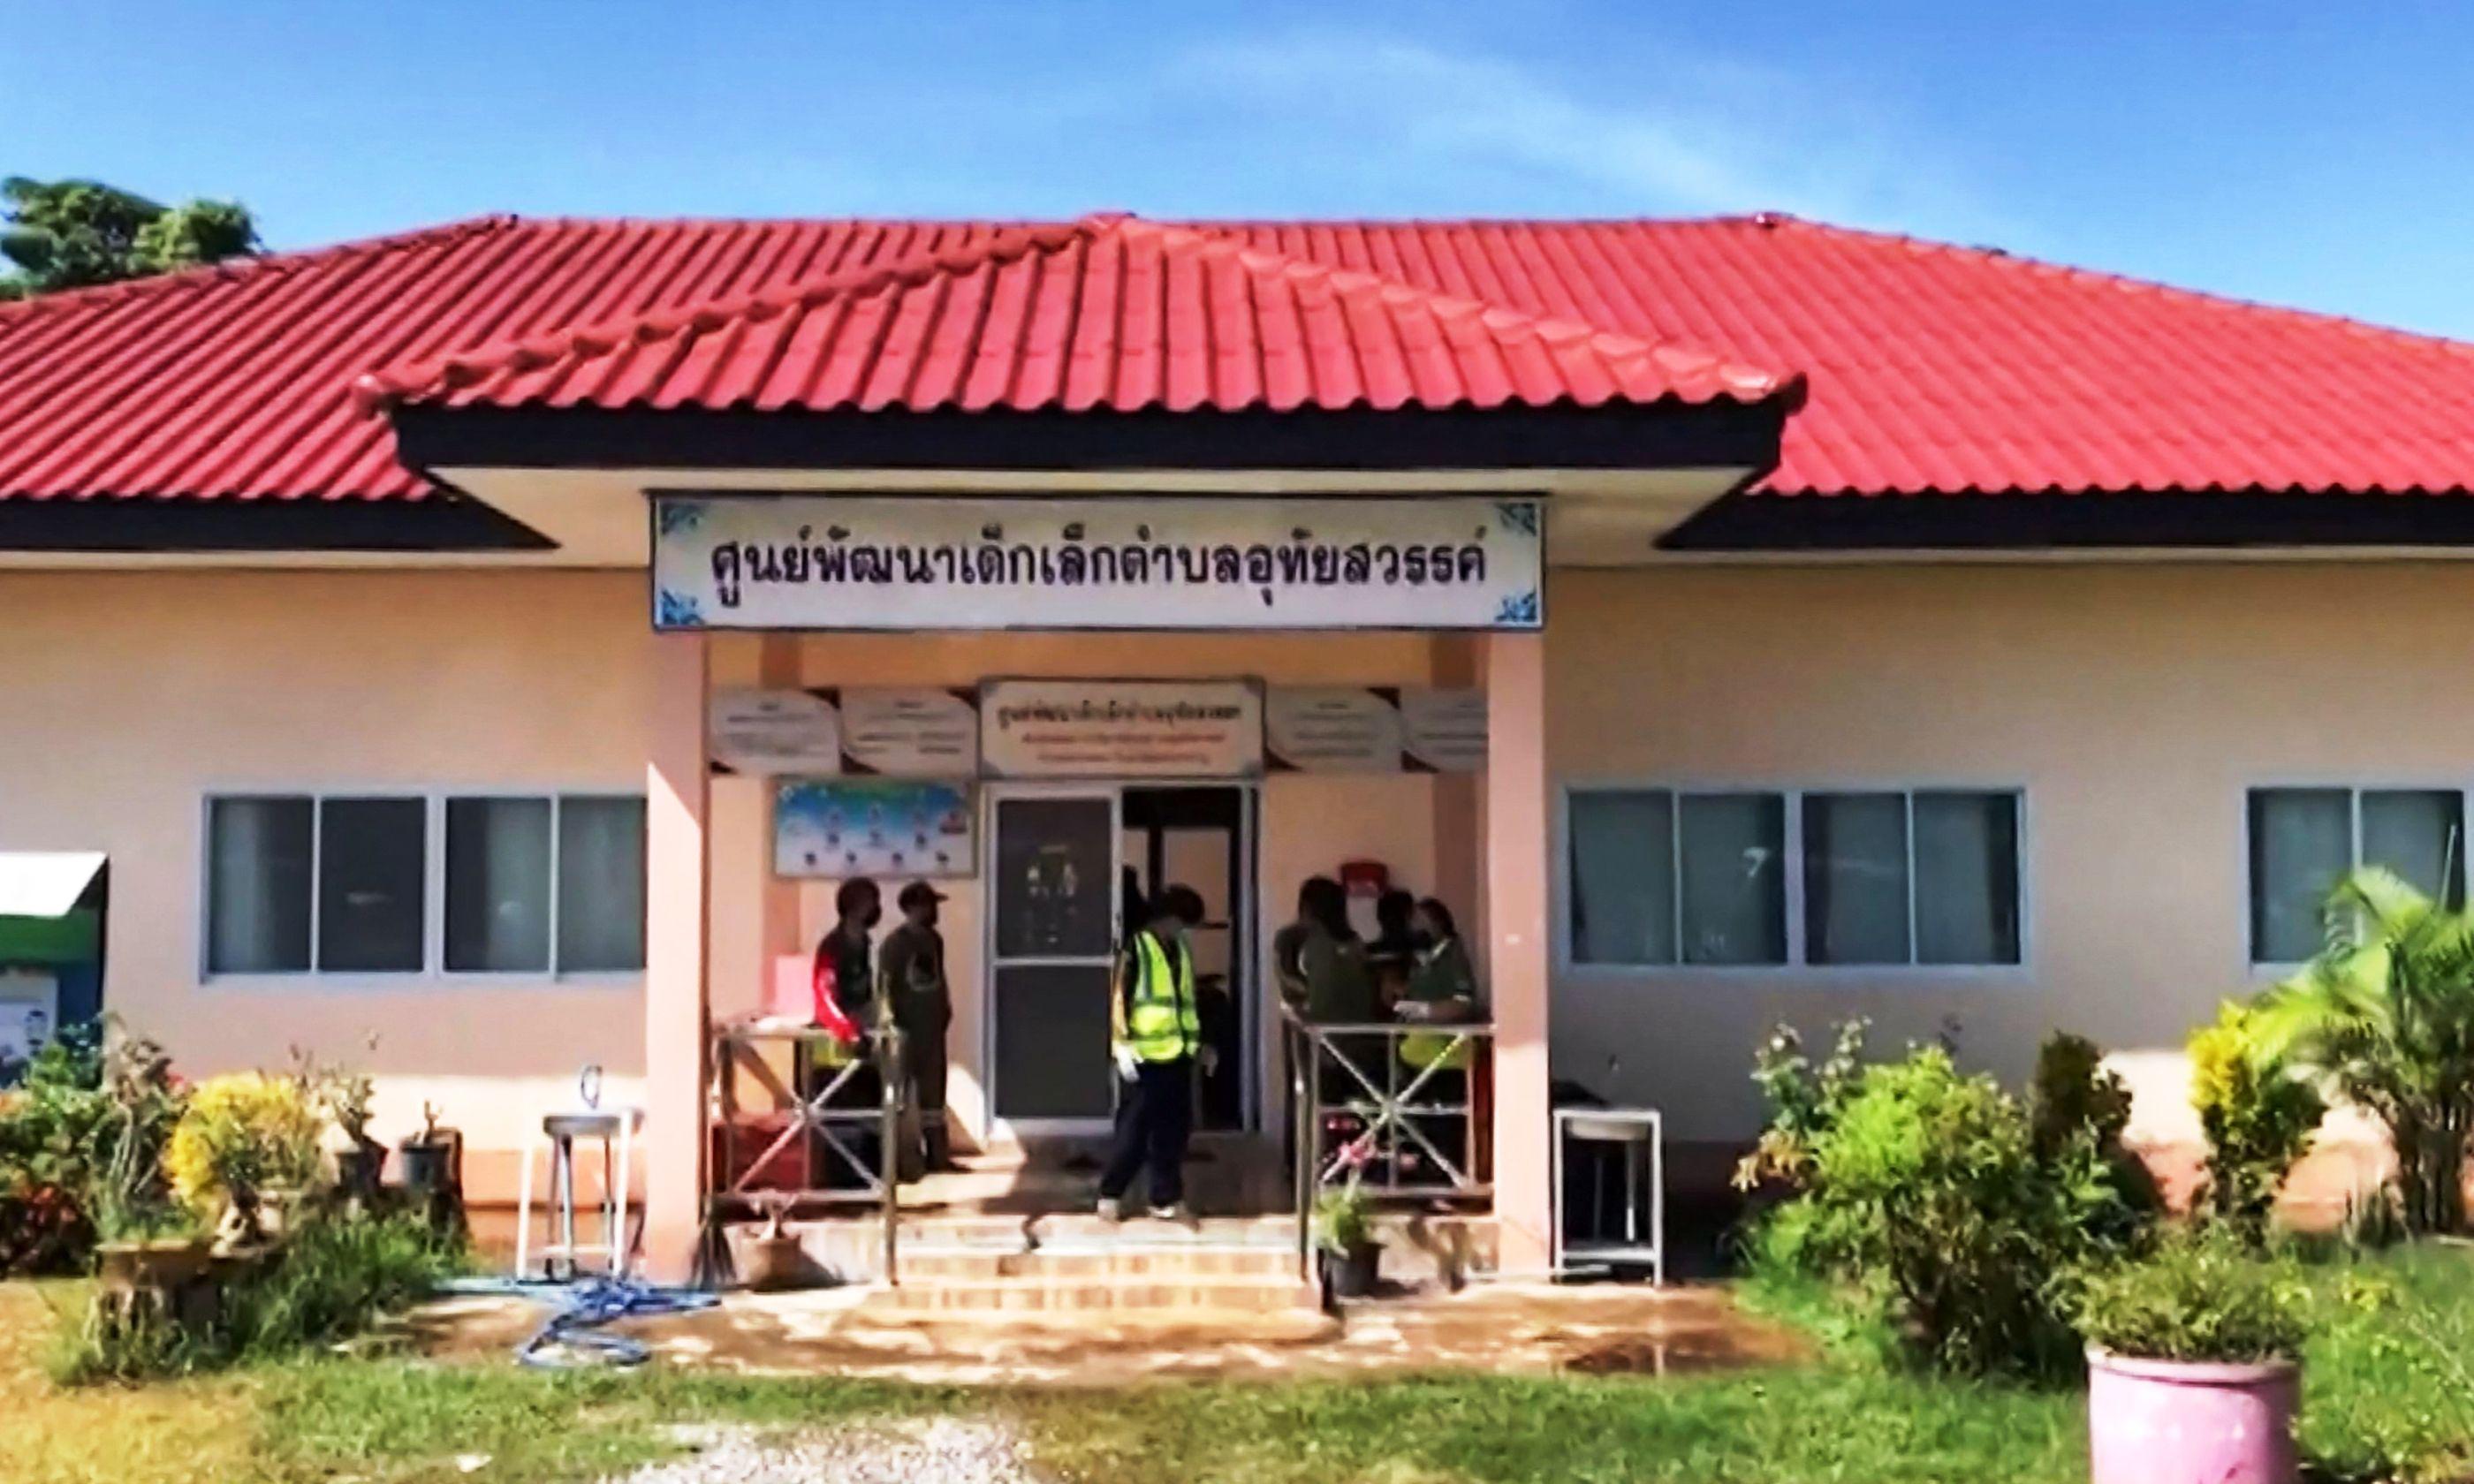 Masacre y conmocioacuten en Tailandia- expoliciacutea matoacute a 24 nintildeos a su familia y se suicidoacute